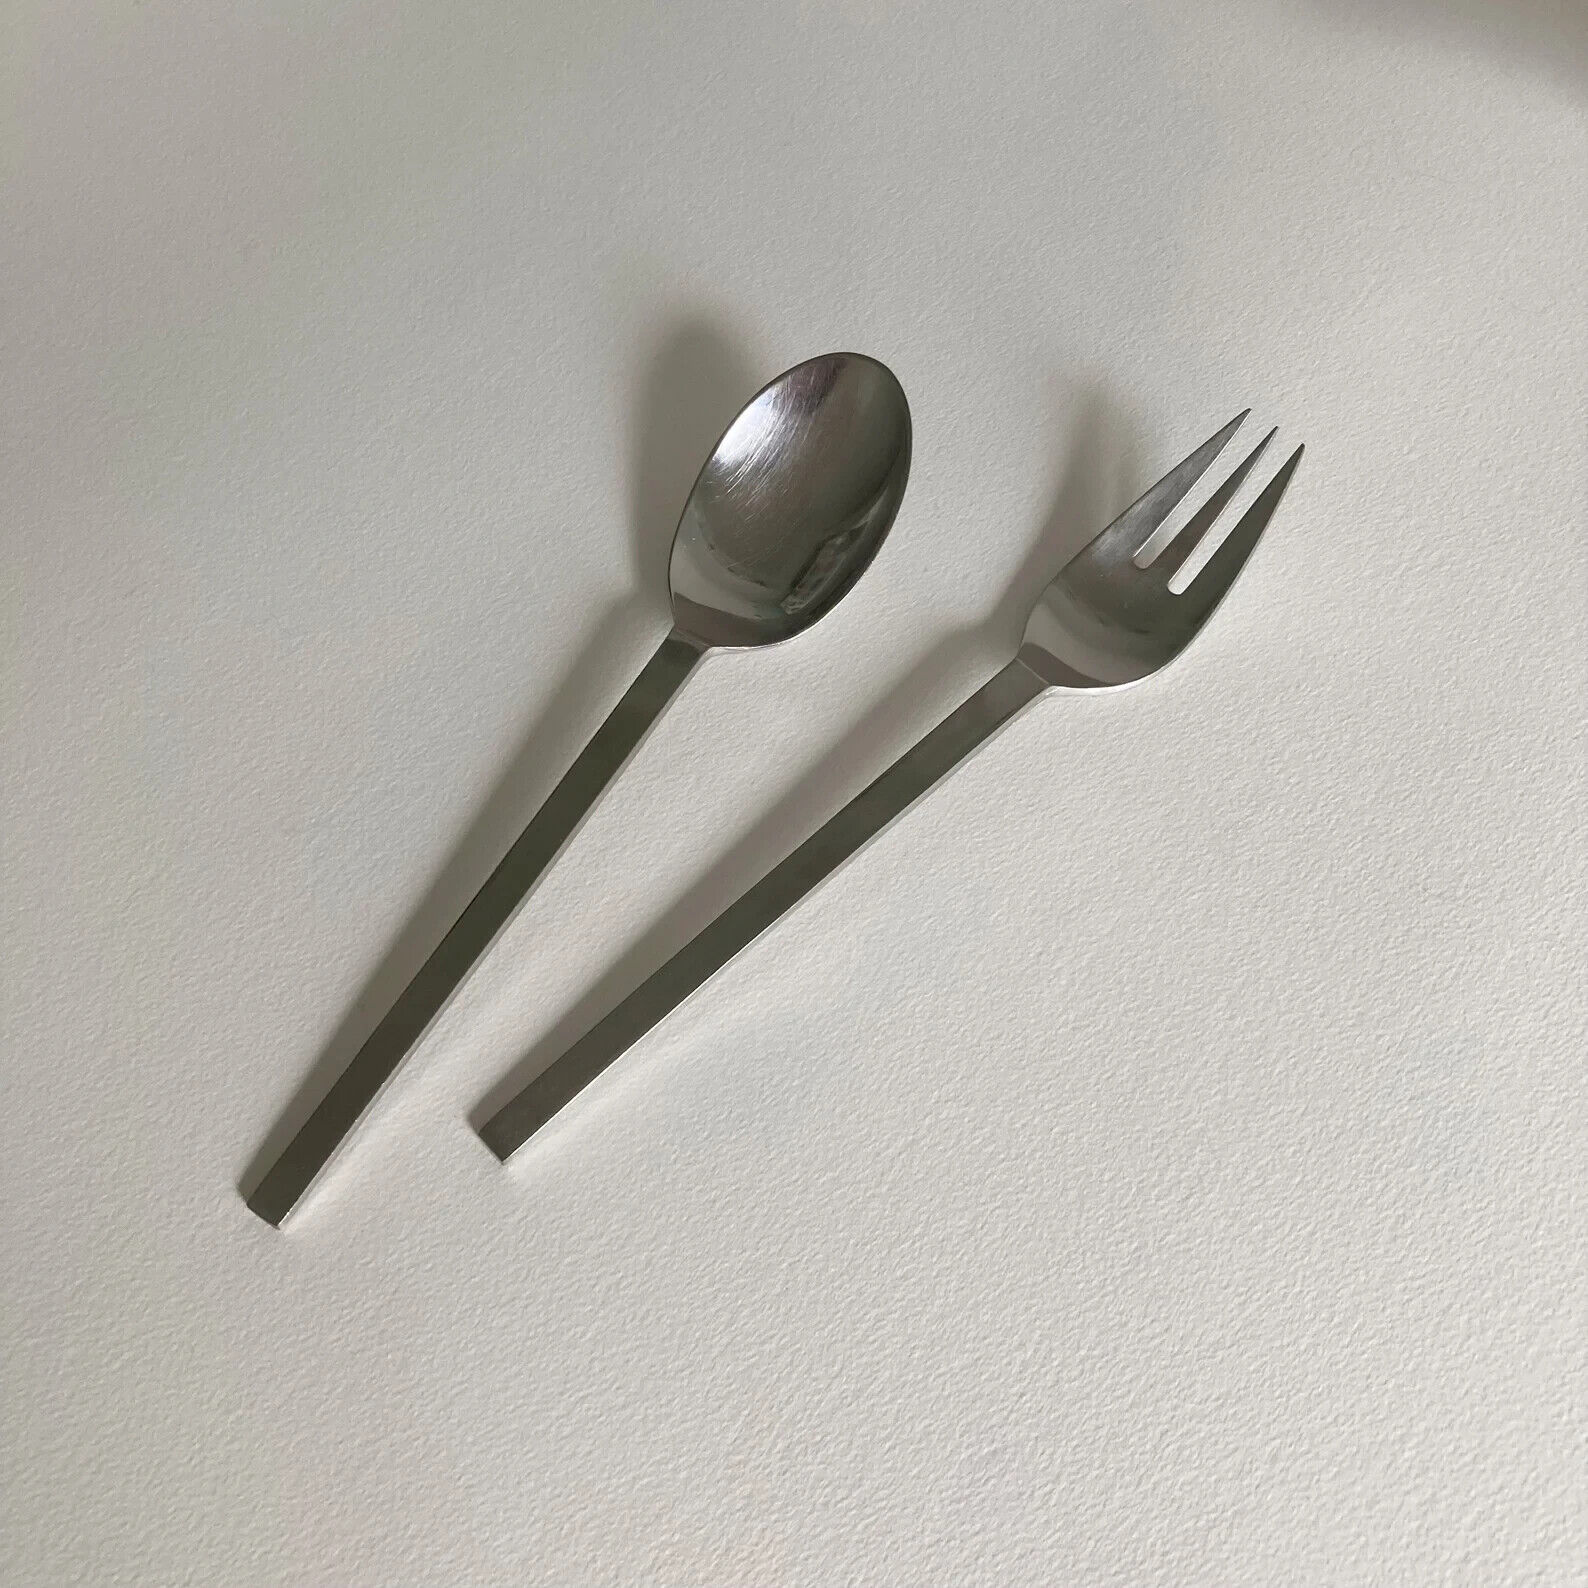 Dansk Ingot Solid Serving Set – 2 piece – Serving Spoon and Fork - Japan